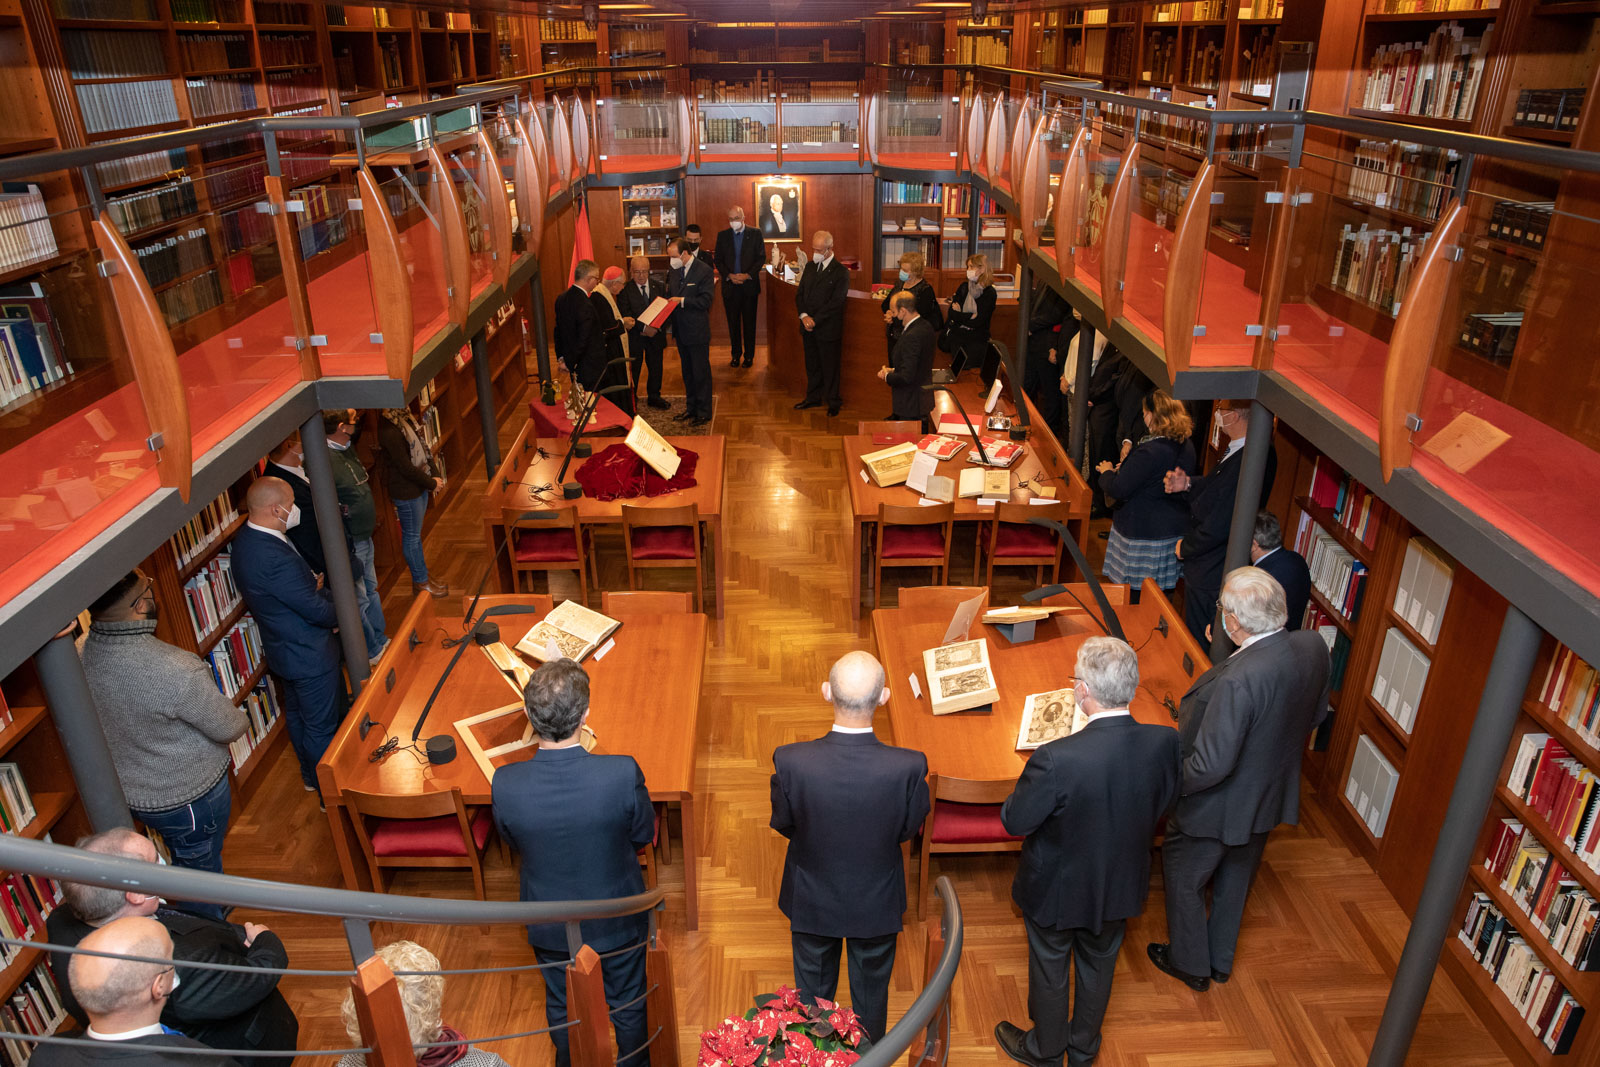 Zeremonie gibt dem Malteserorden sein Magistralkonservatorium zurück